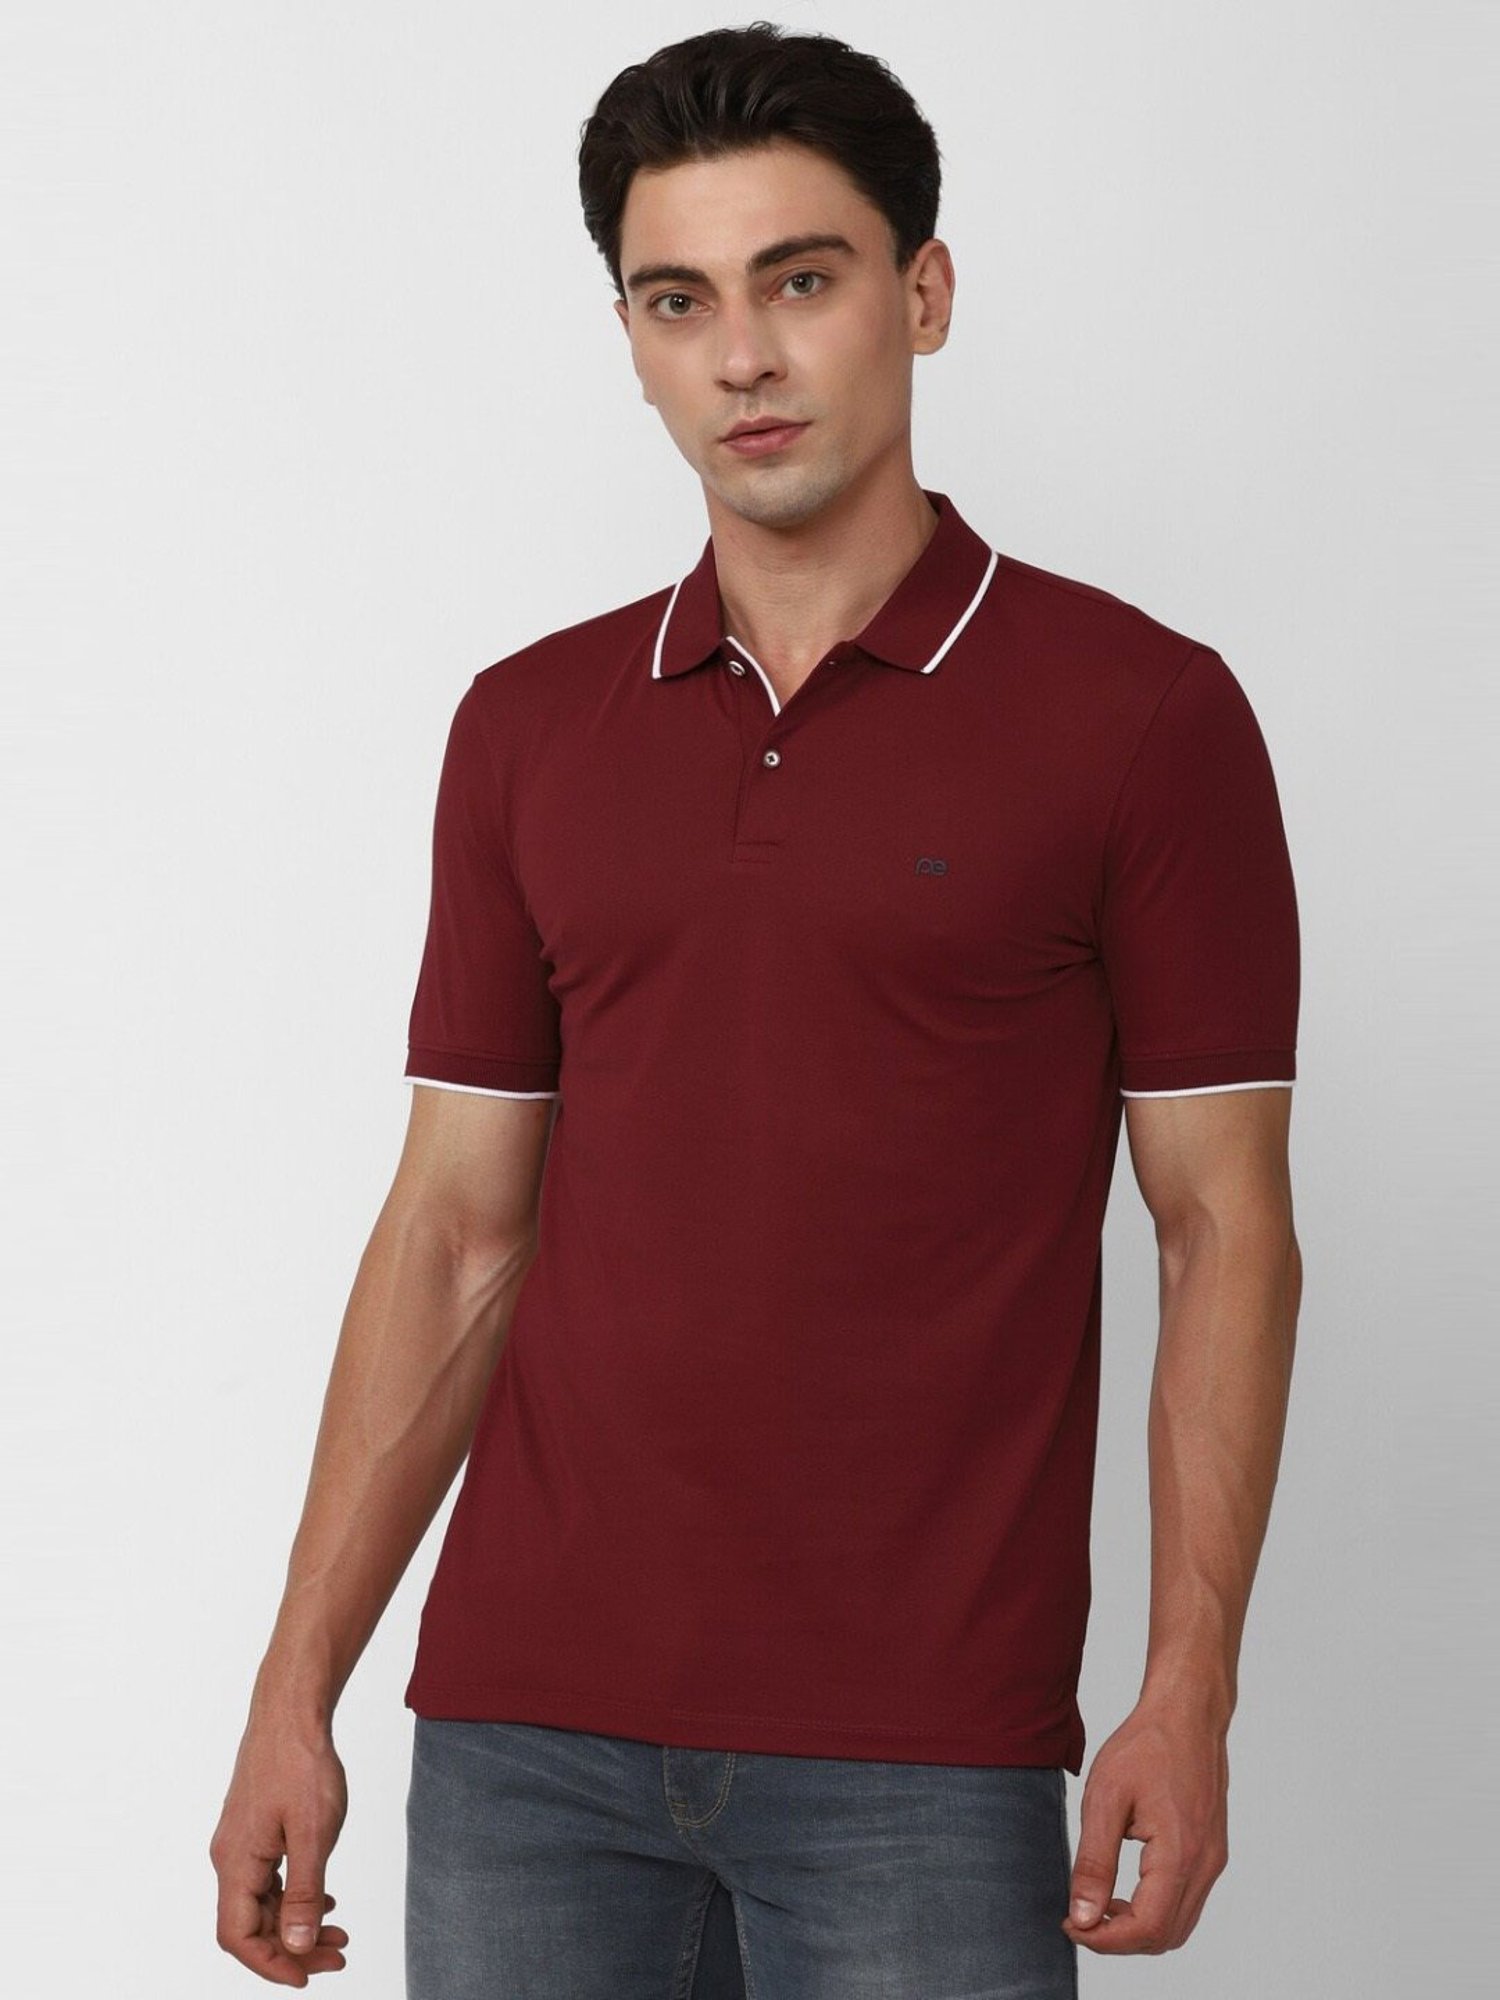 Cotton Blend Plain Peter England Mens Shirt, Formal Wear